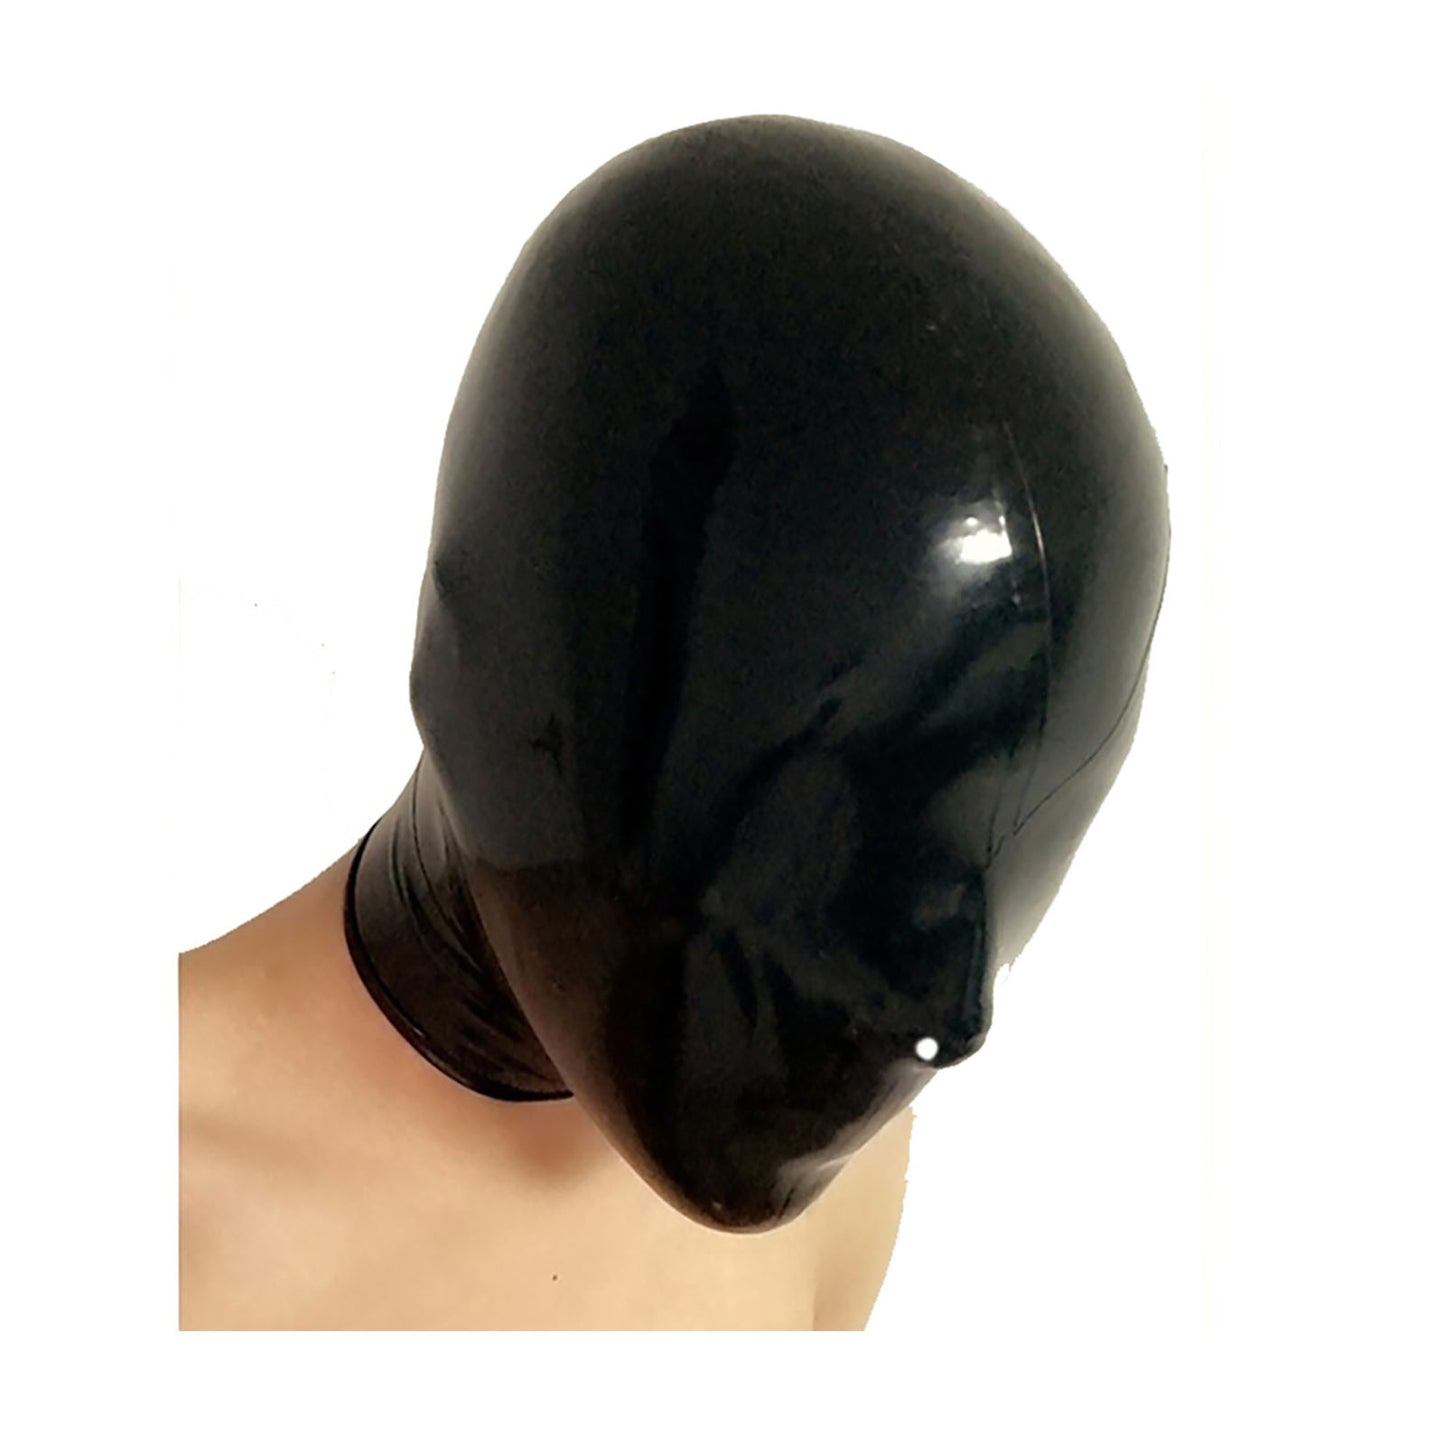 MONNIK Full Cover Latex Mask Rubber Unisex Hood Open Nostril with Rear Zipper Handmade for Bodysuit Fetish Party